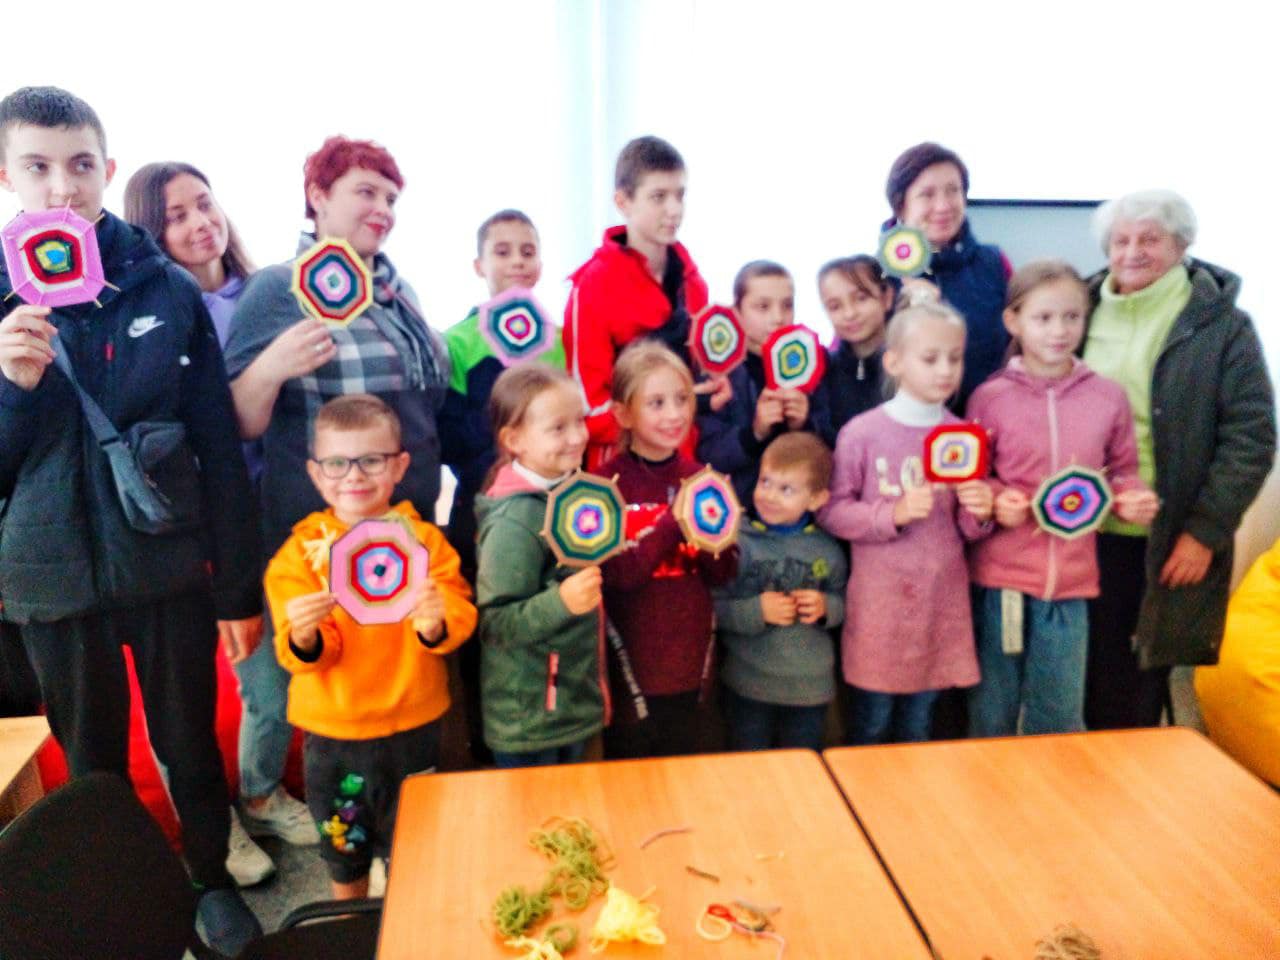 25 жовтня діти Шелтер переселенців Луганщини стали учасниками в Coworking Space МАЙСТЕР-КЛАСУ з плетіння мандали-оберегу 